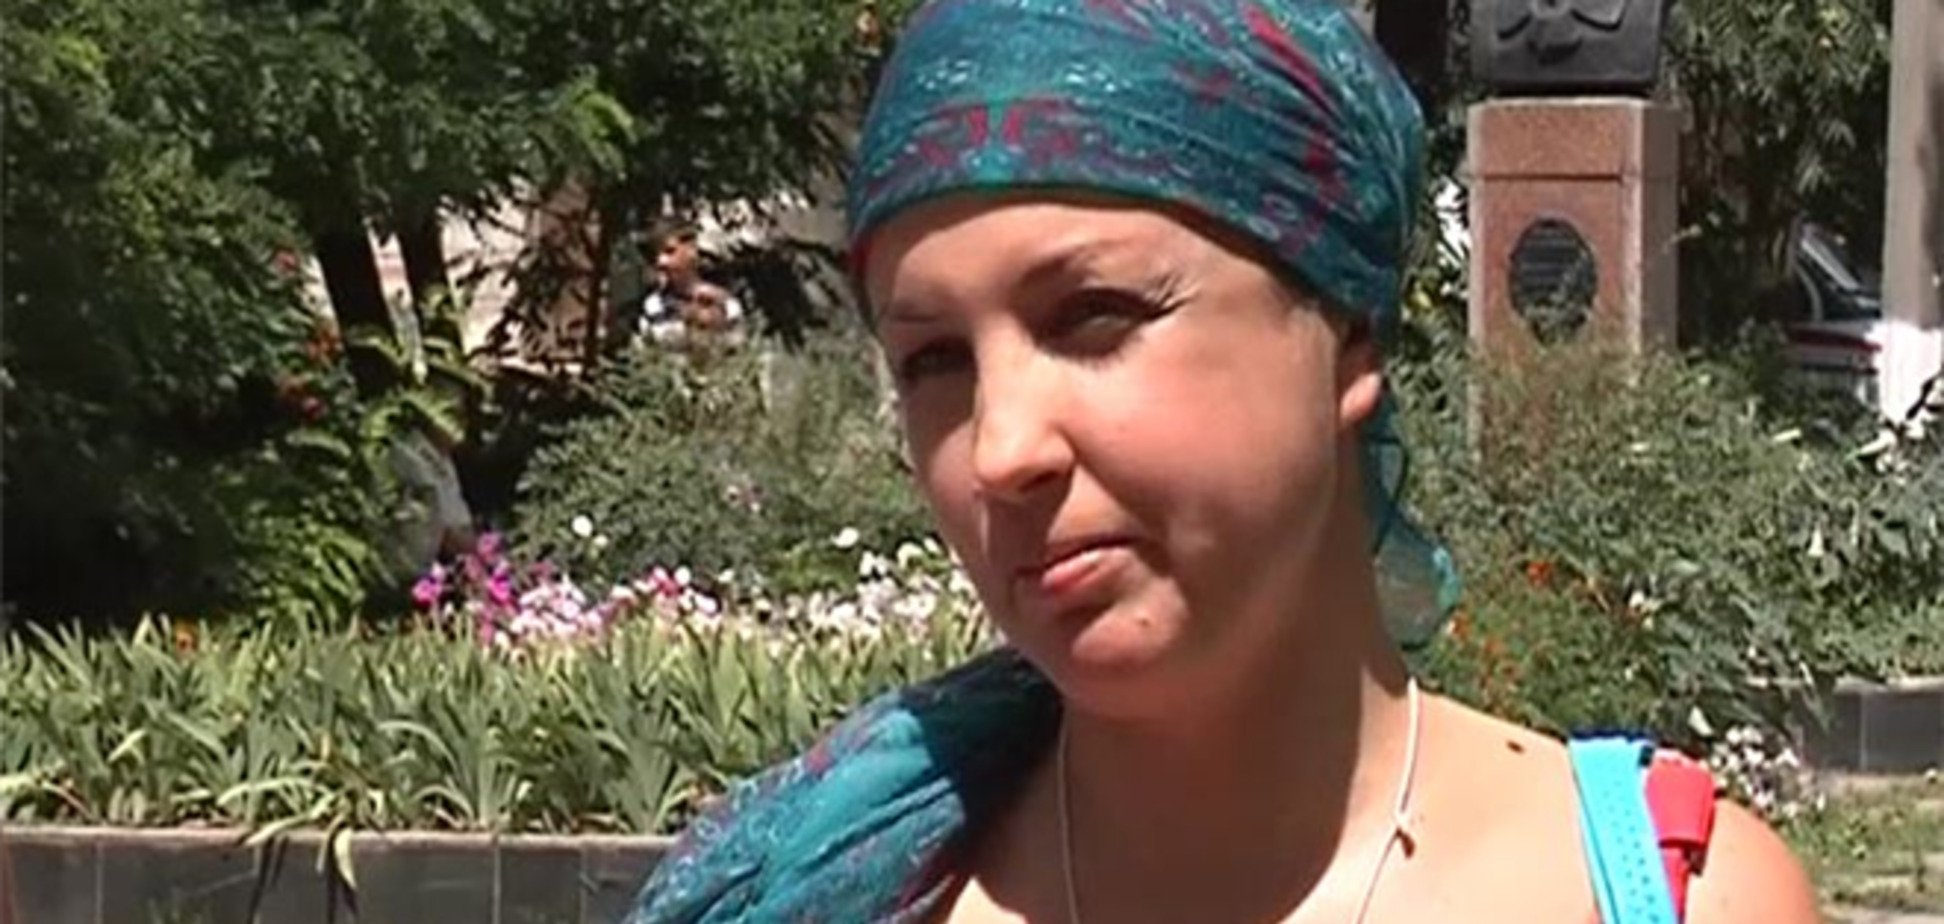 Изнасилование во Врадиевке: Крашкова рассказала, как спаслась